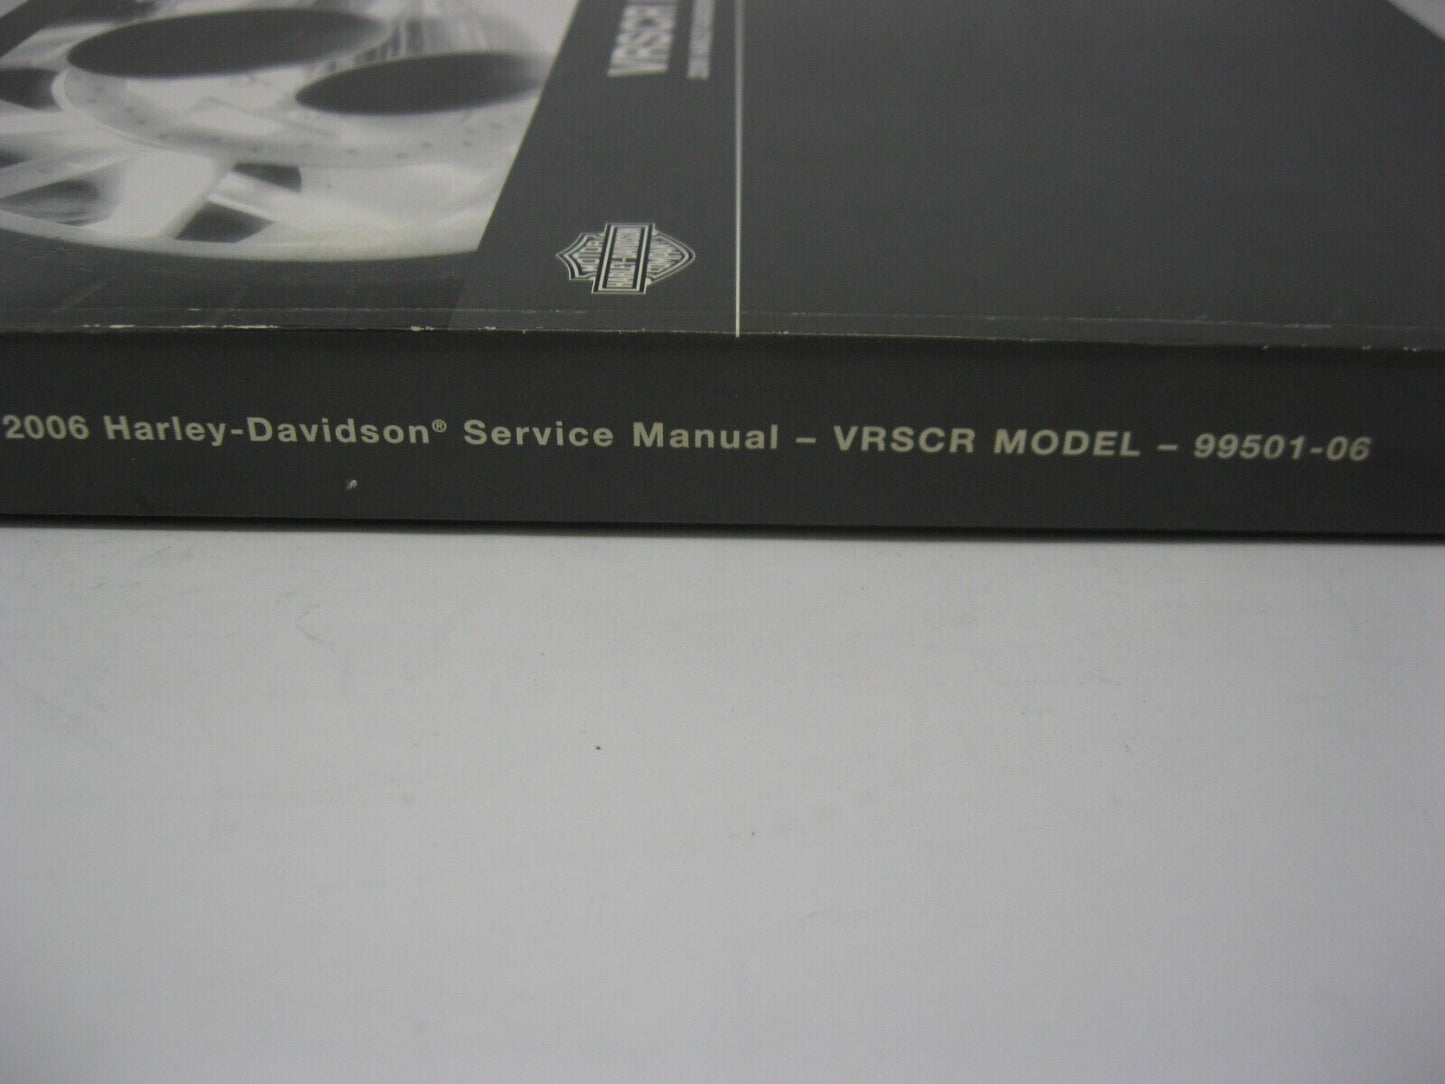 Harley-Davidson VRSCR Models 2006 Service Manual 99501-06